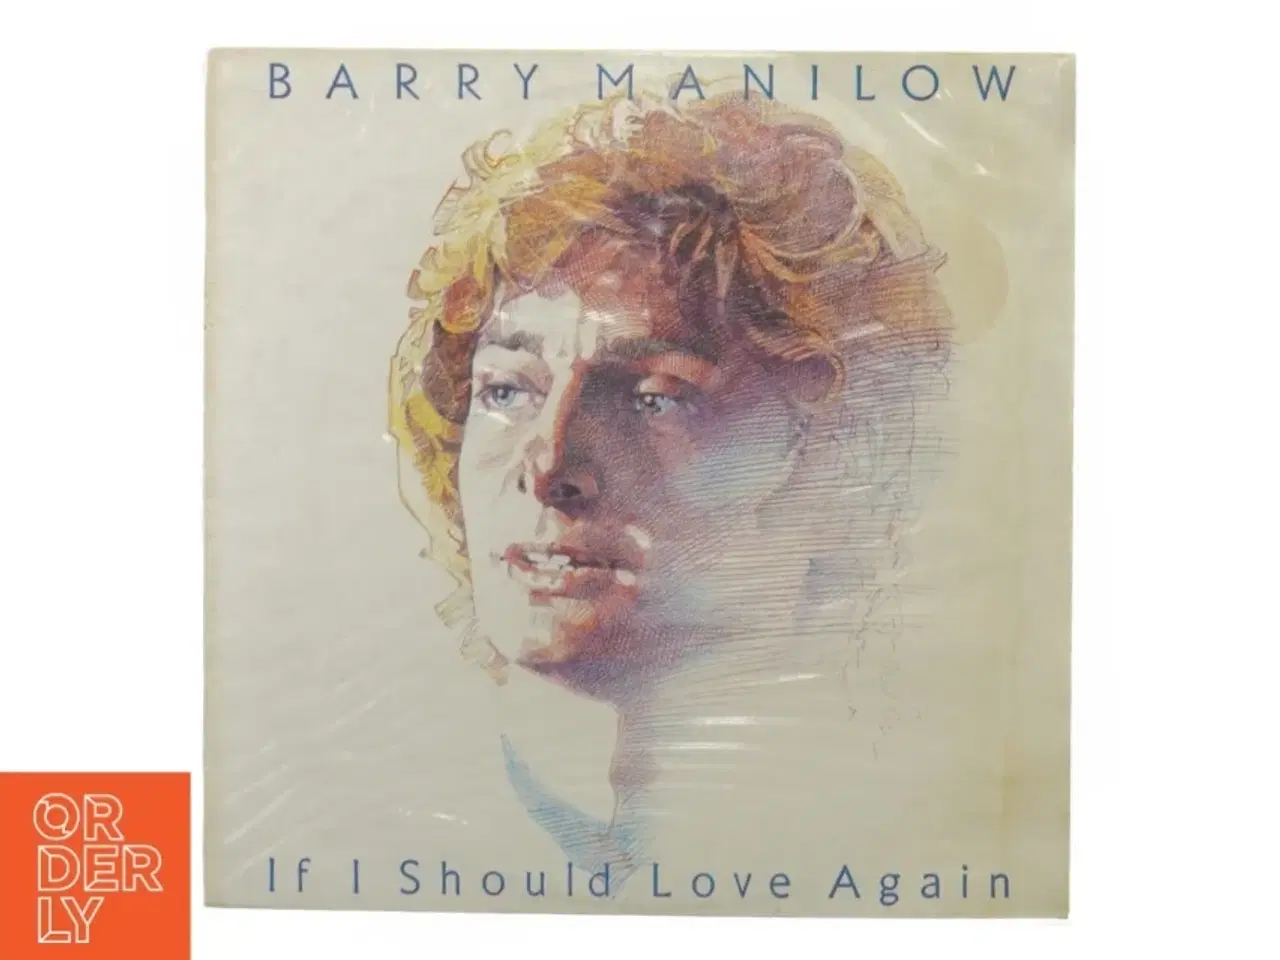 Billede 1 - Barry Manilow, if I should love again fra End Cv (str. 30 cm)